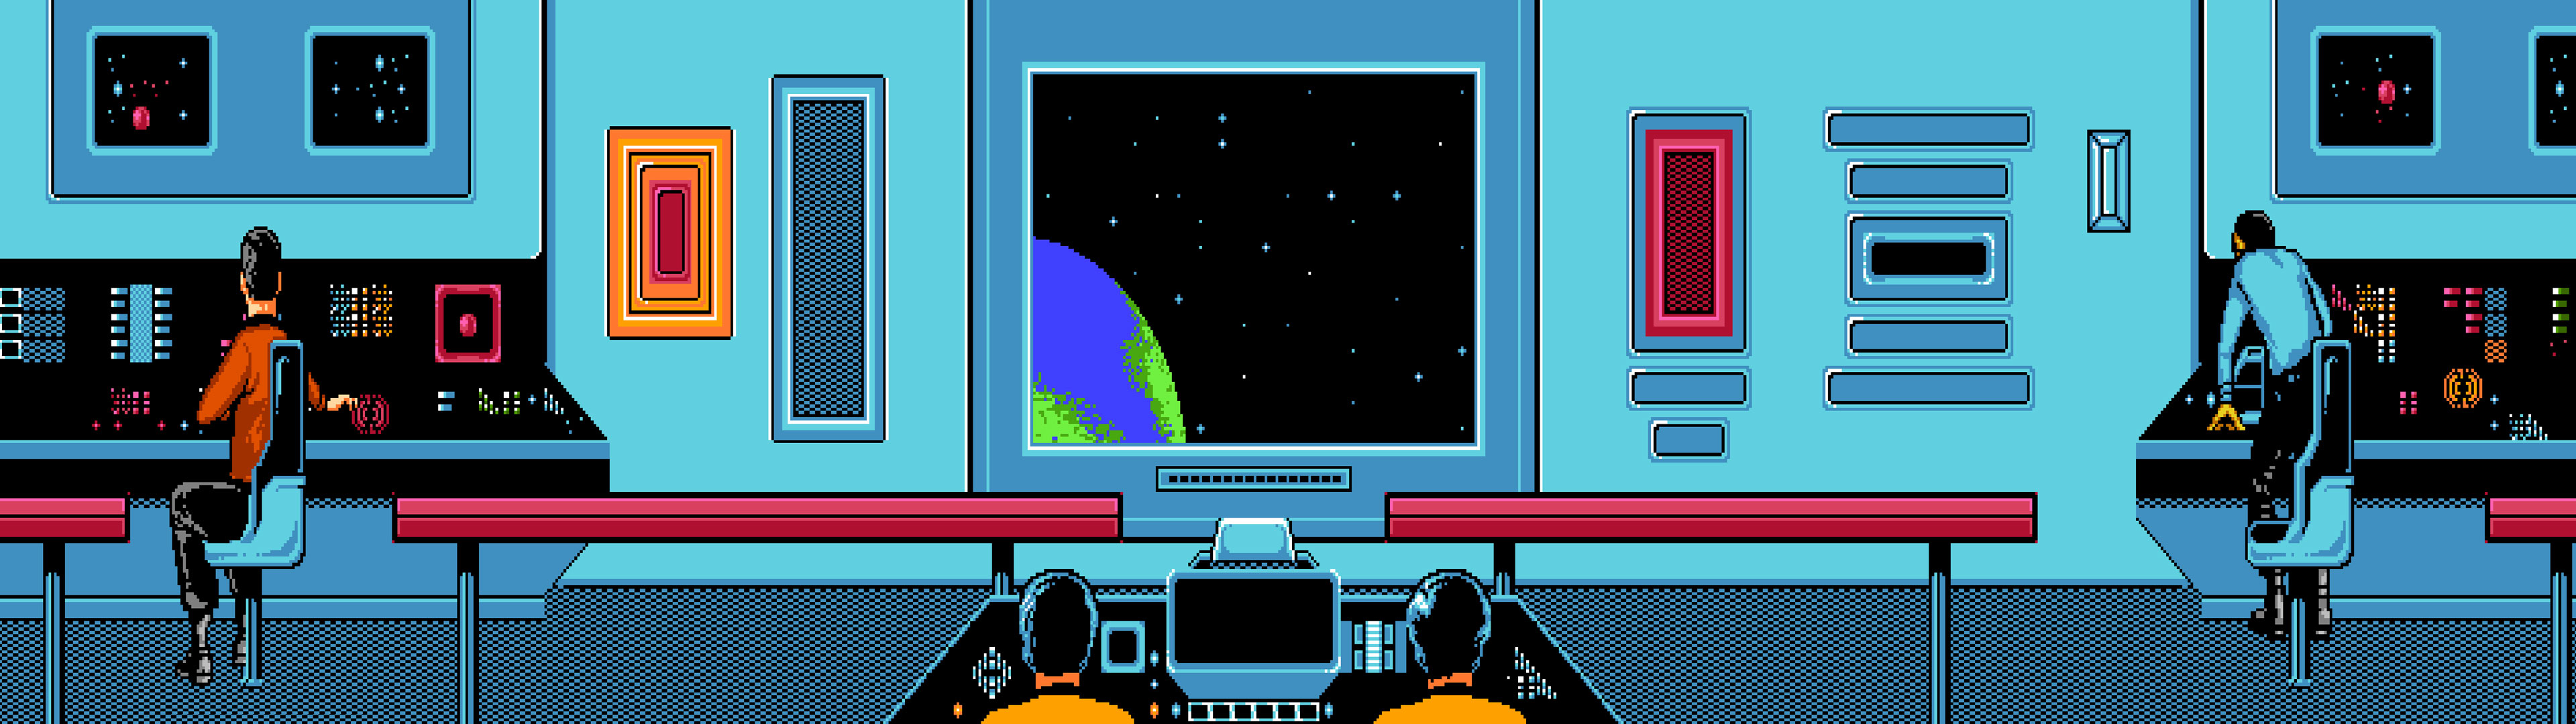 Multi Monitor Dual Screen Video Games Retro Classic Sci Fi Science